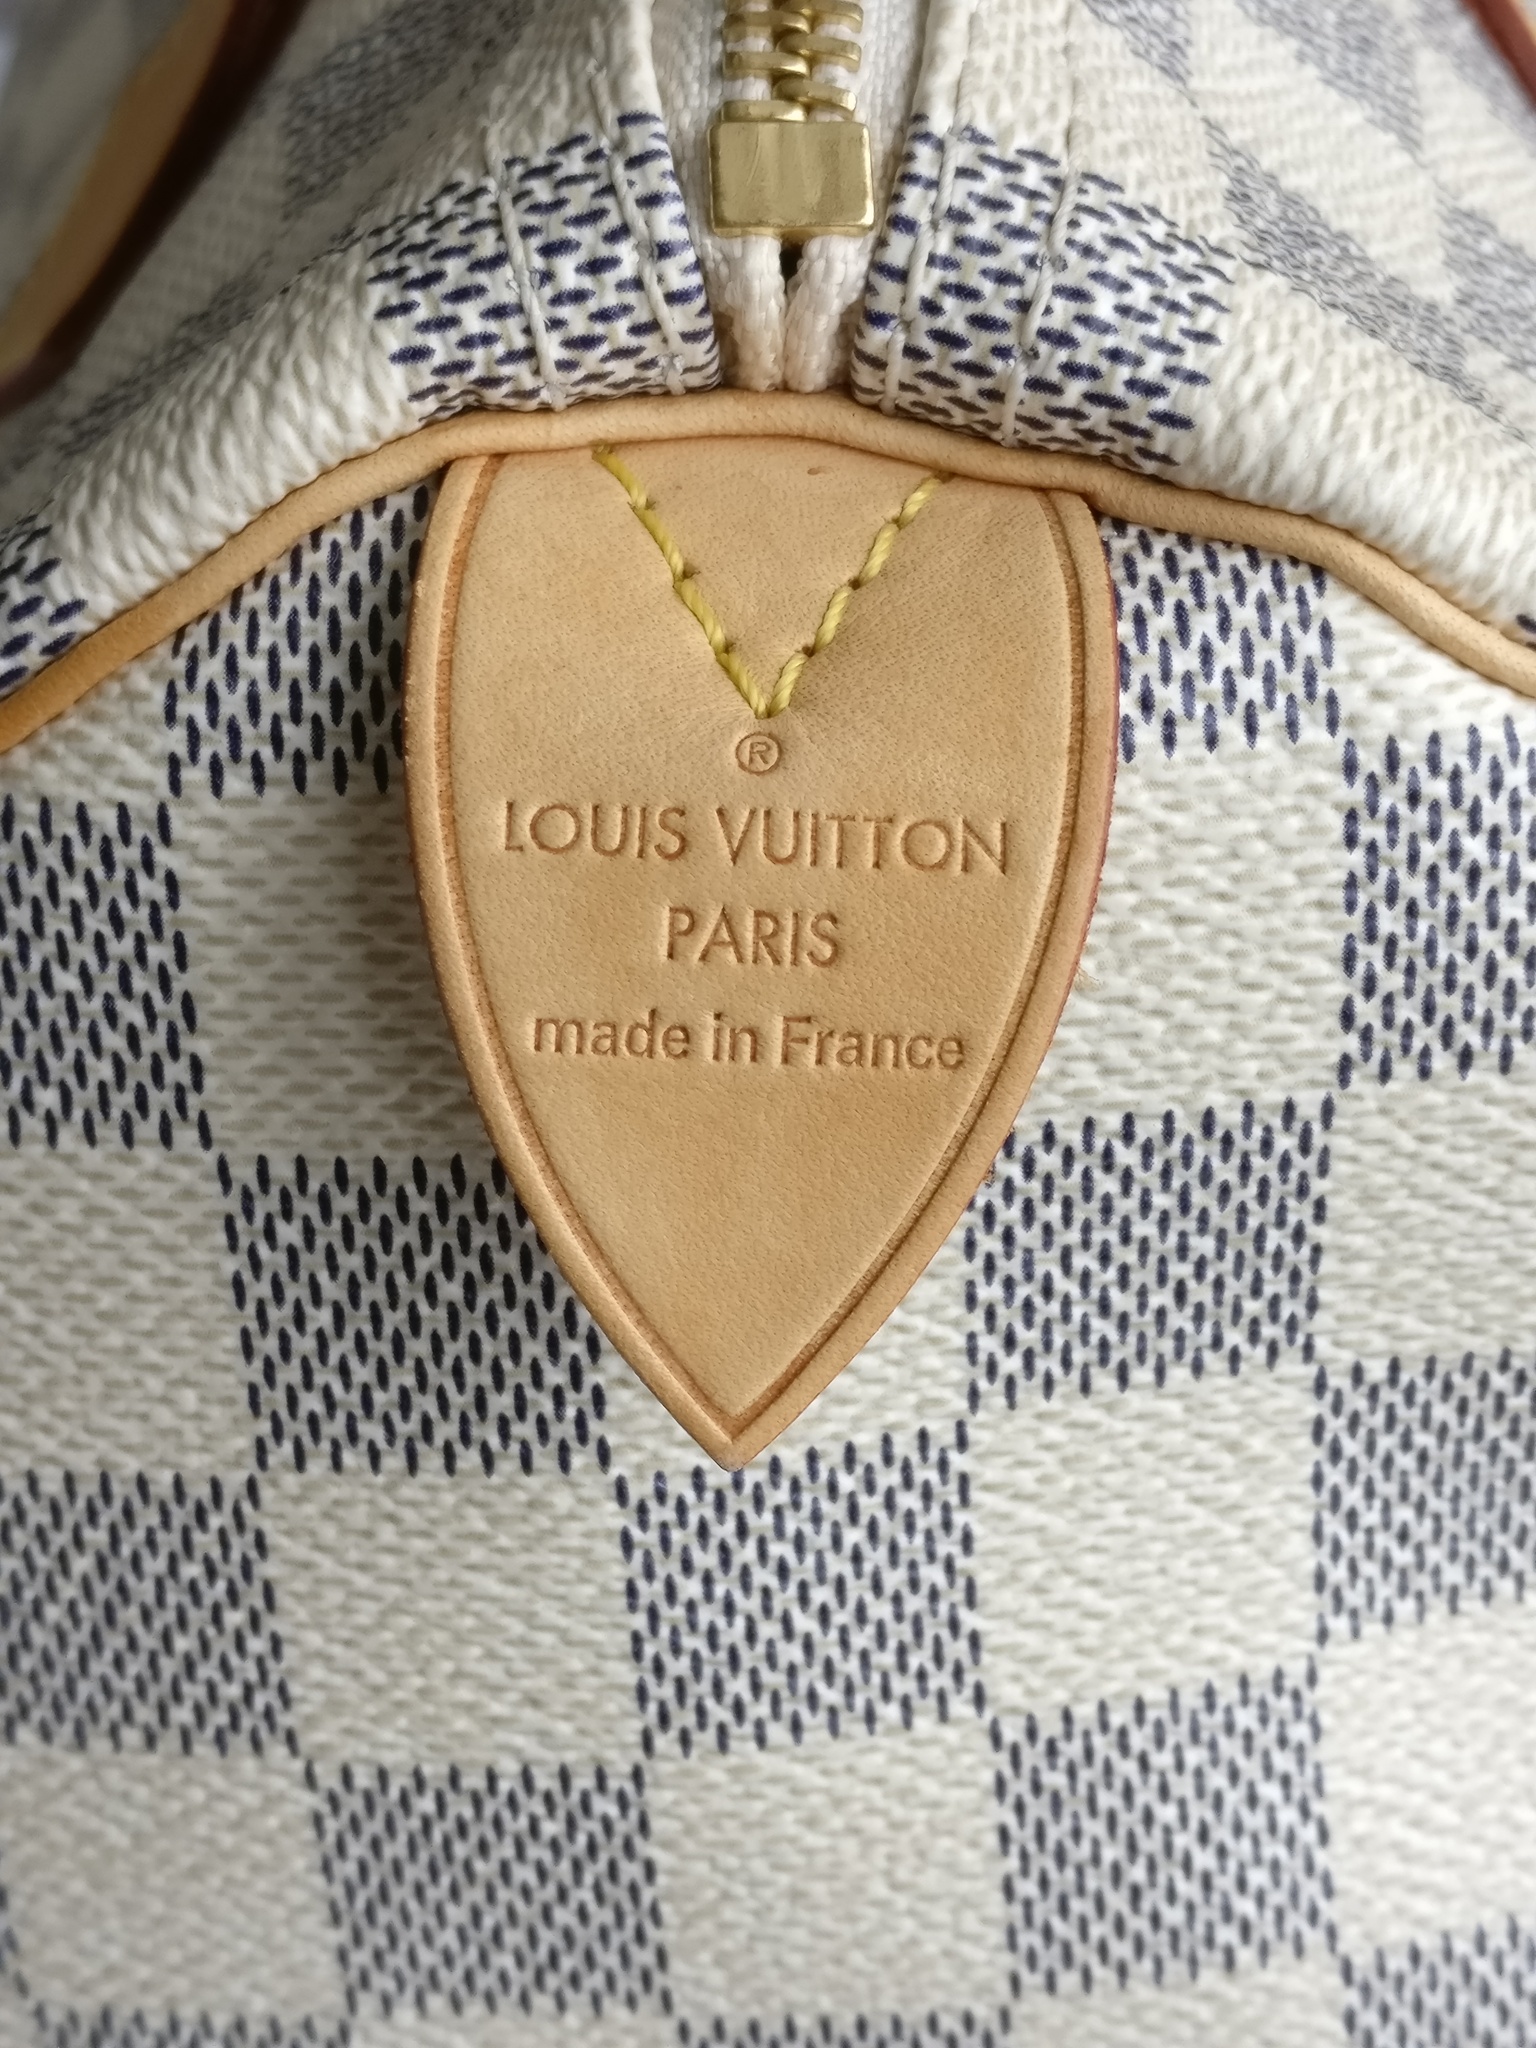 Louis Vuitton Speedy 30 damier azur